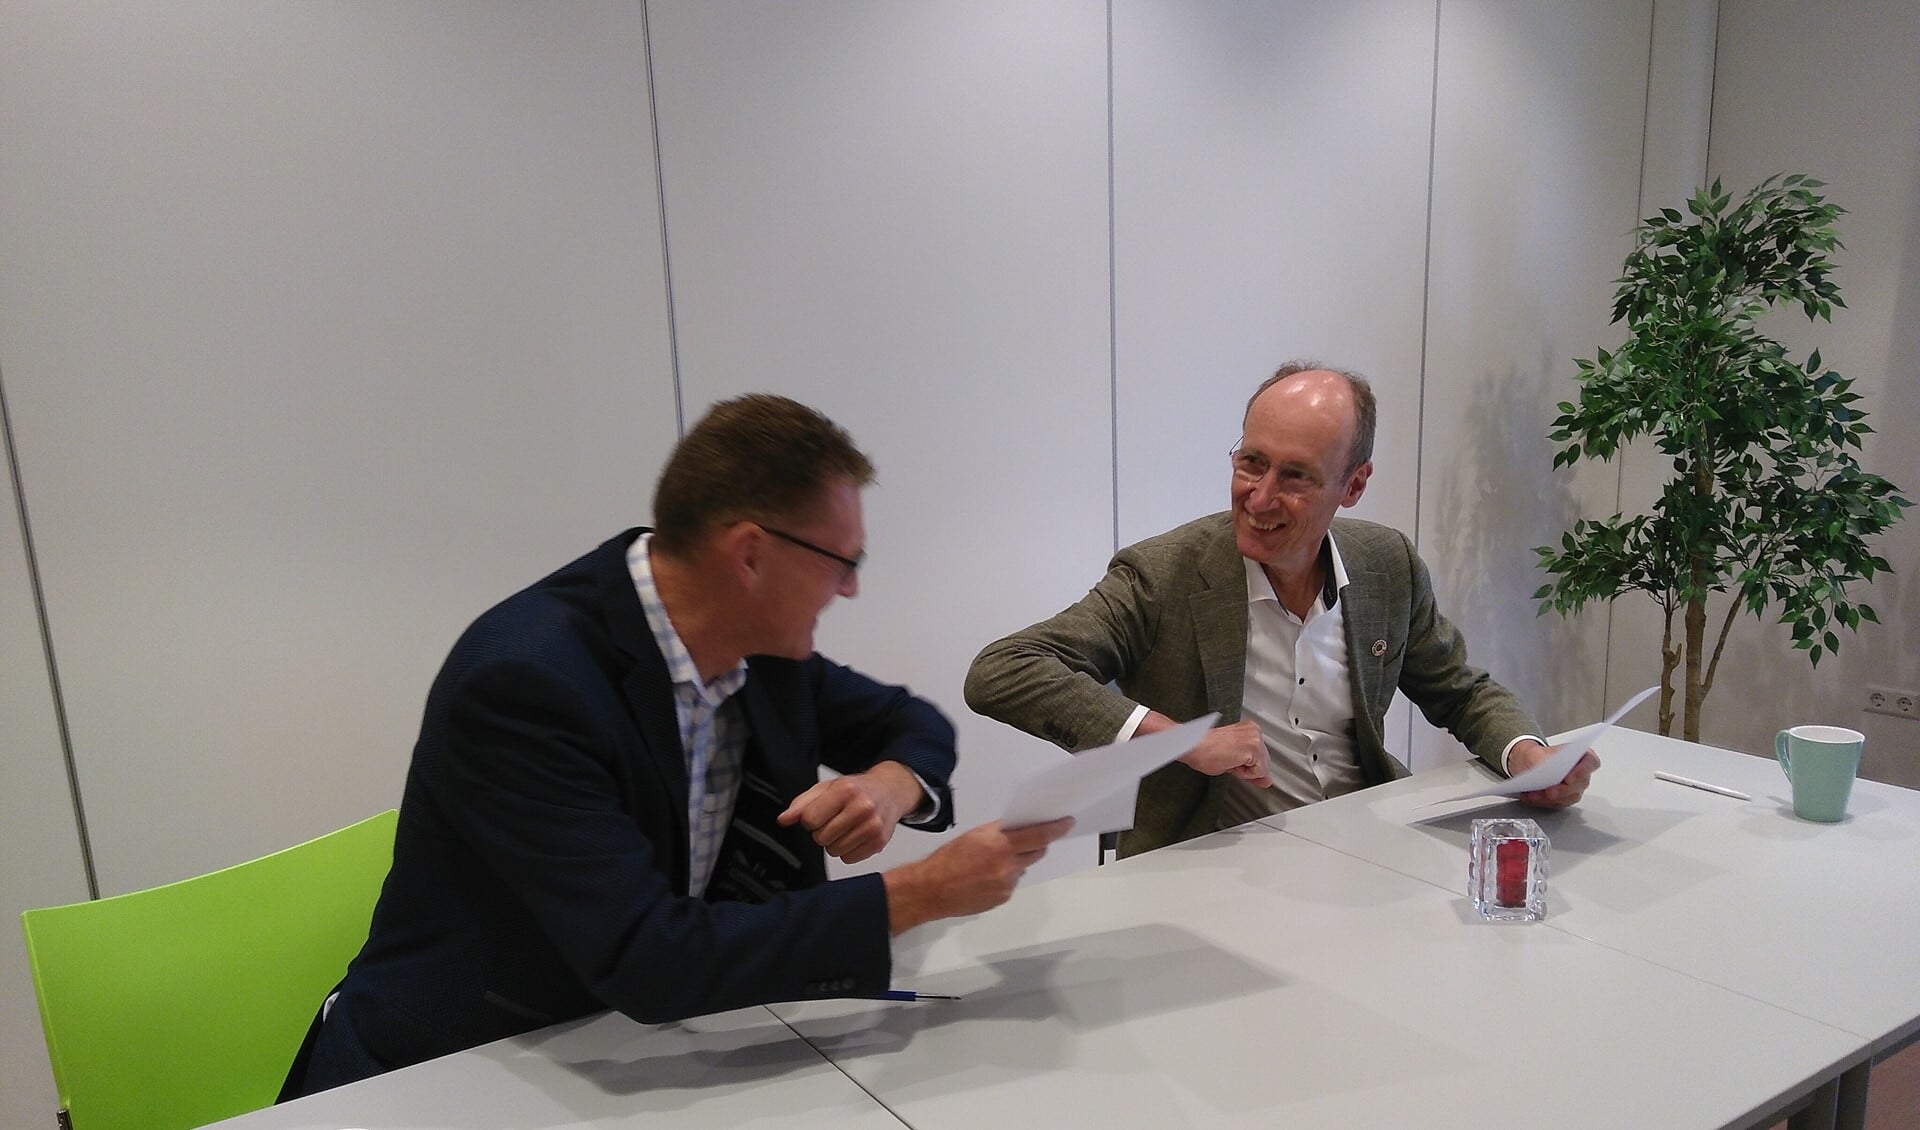 Paul Nagtegaal en Lex Hoefsloot doen elleboogstoot na ondertekening samenwerkingsovereenkomst